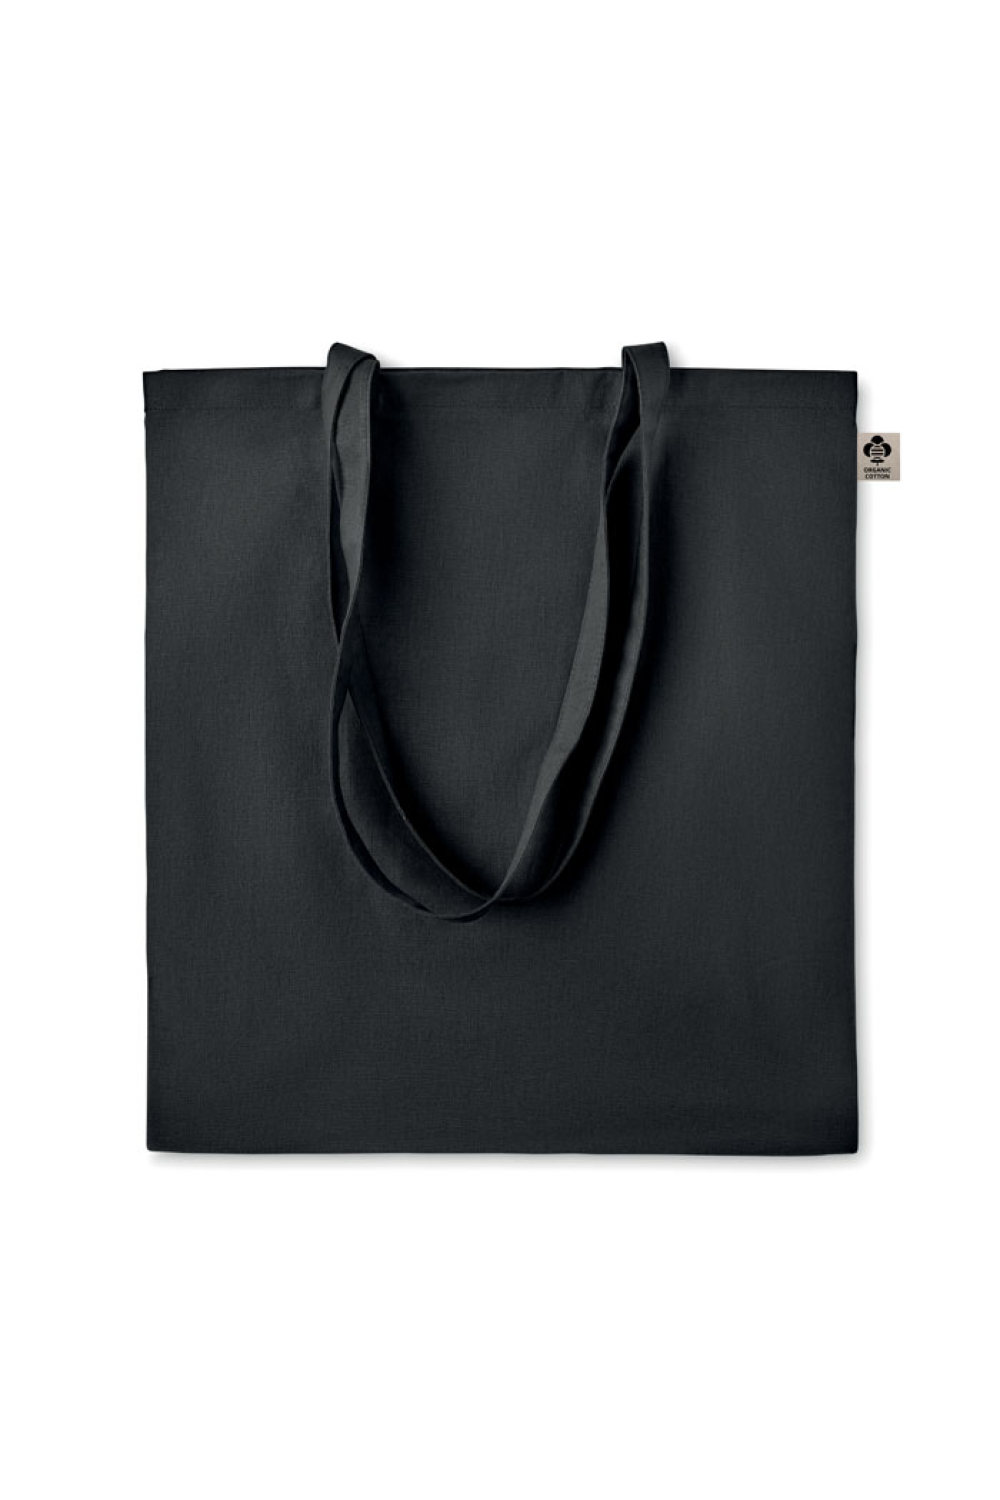 Créer un pack technique de concept de sac détaillé, un sac